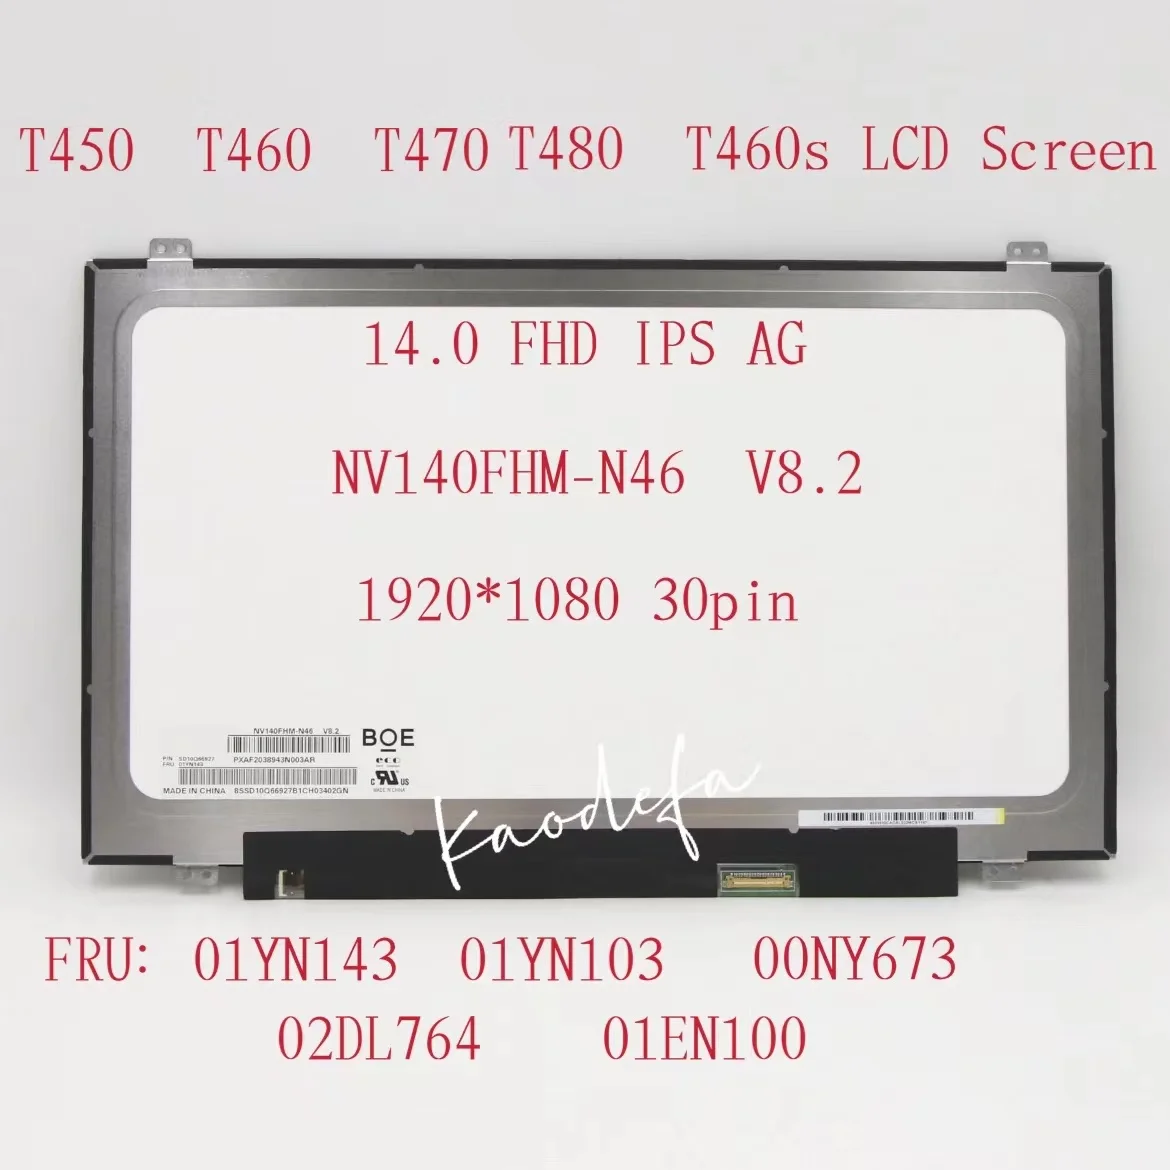  Lenovo Thinkpad T460 L460 T460p L470 T470p T470 T460s T480 FHD - 1920*1080 FRU:00NY673 01EN100 00NY103 01YN143